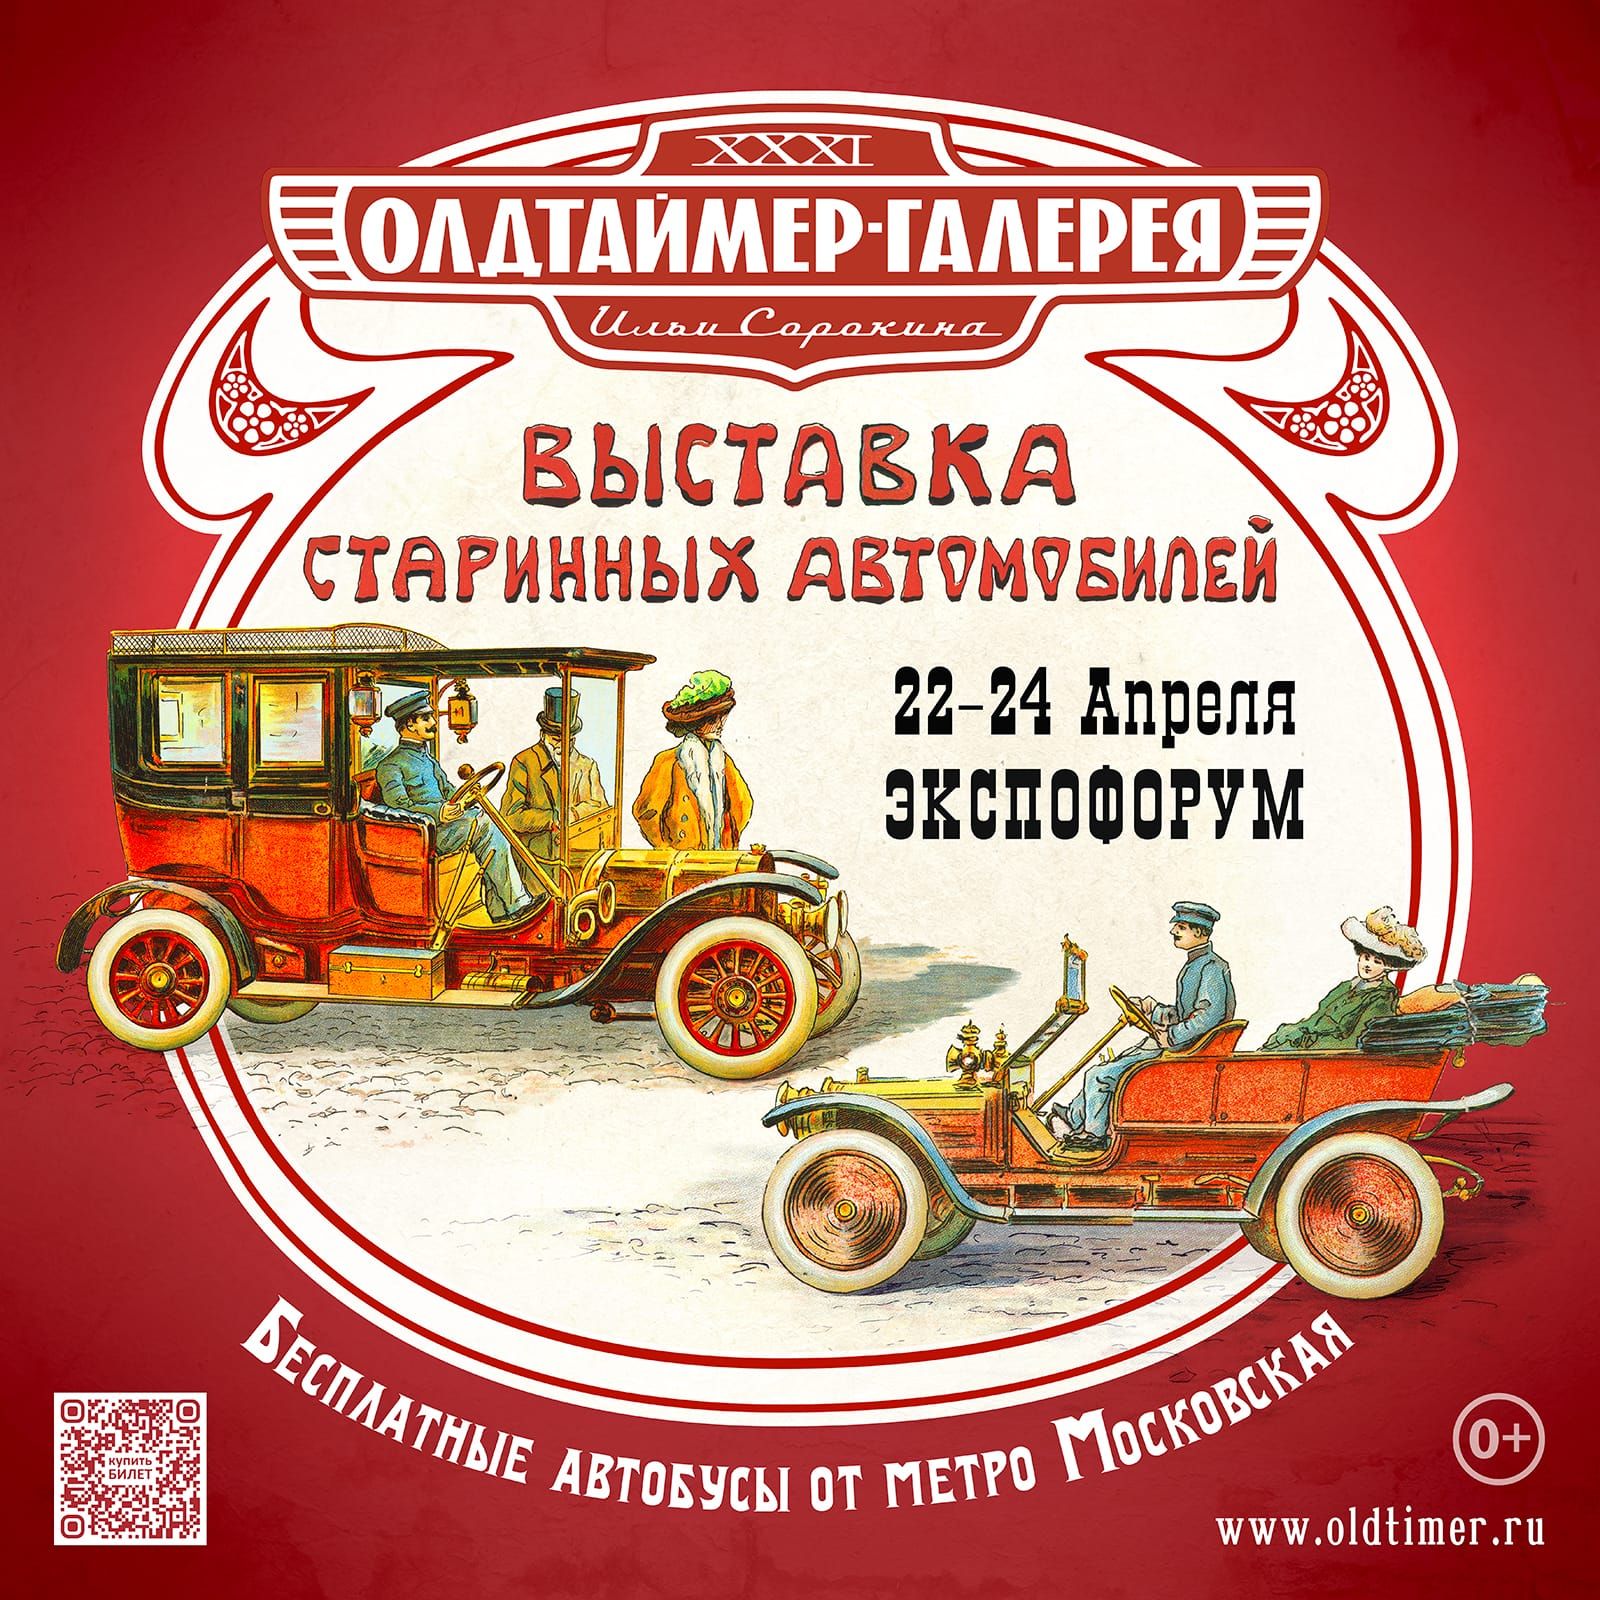 31-я выставка старинных автомобилей «Олдтаймер-Галерея» 22-24 апреля, Санкт-Петербург